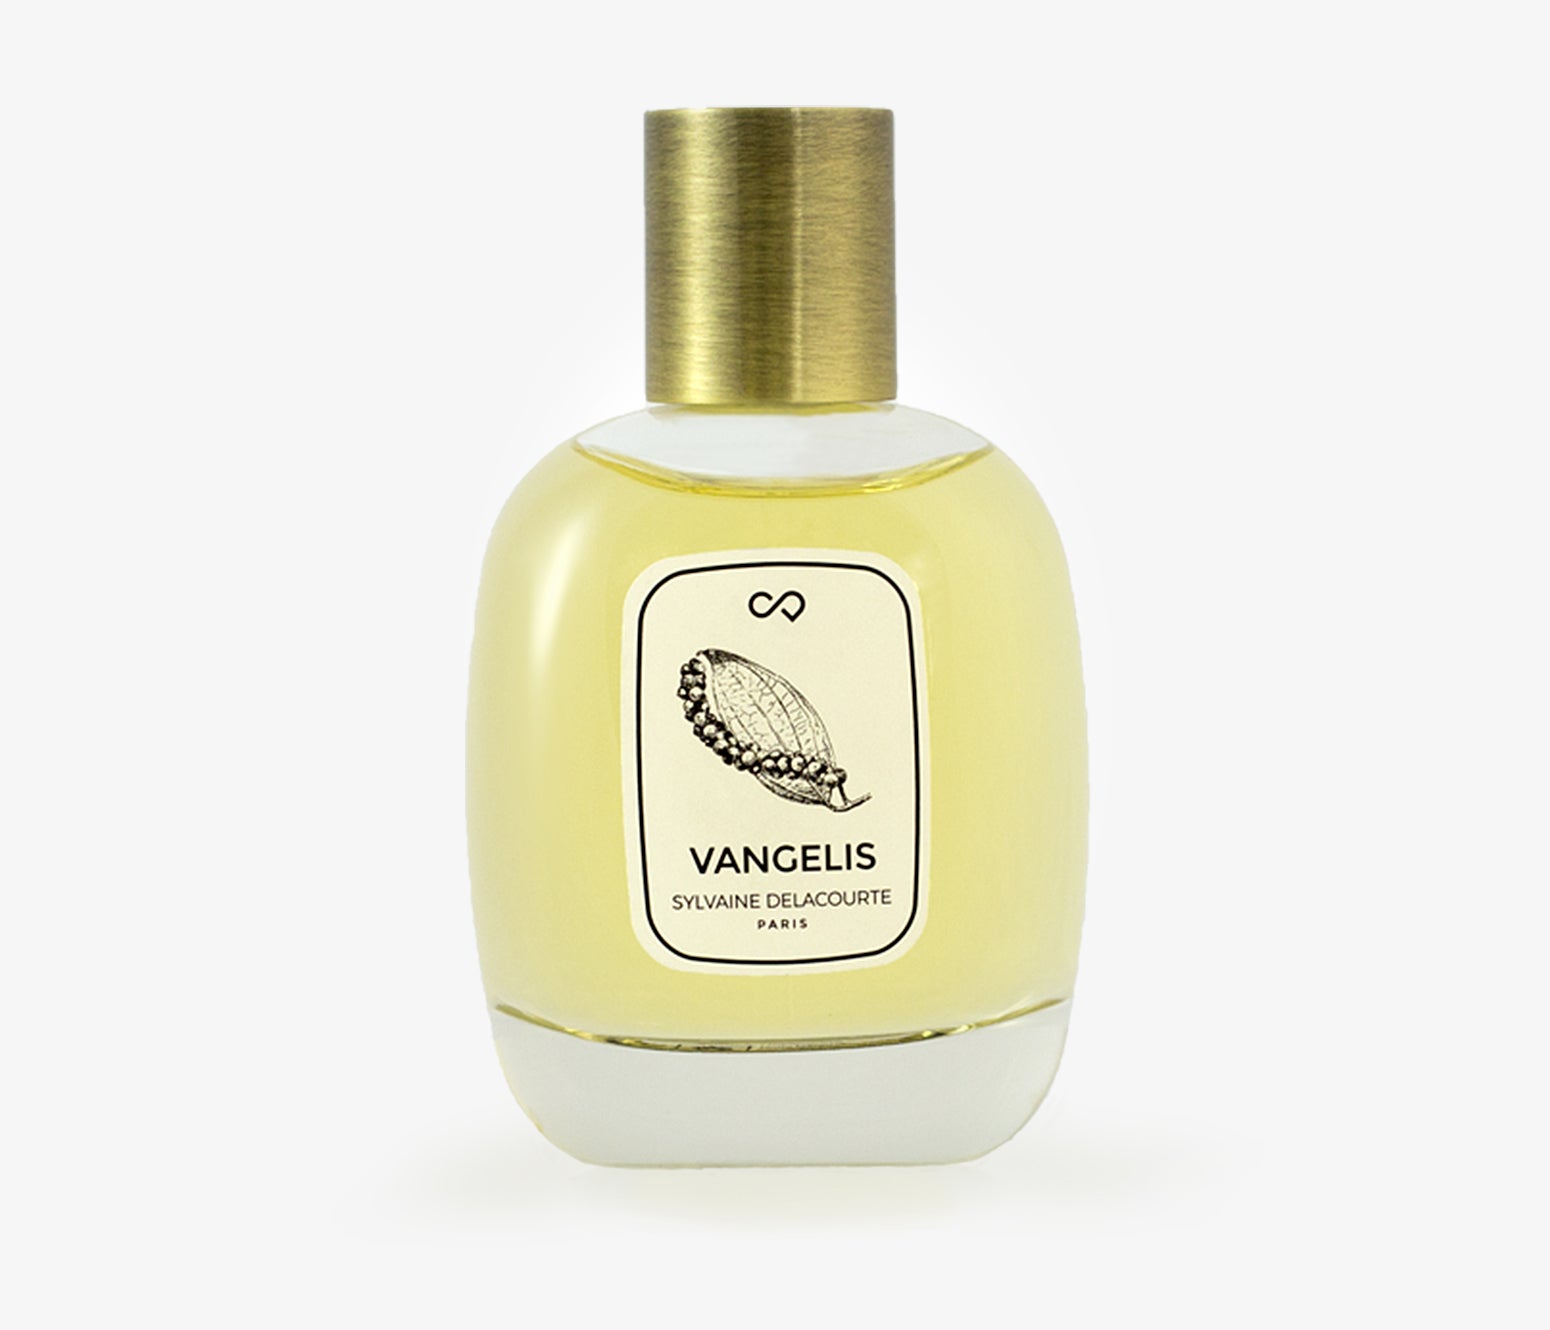 Sylvaine Delacourte - Vangelis - 100ml - OYY001 - product image - Fragrance - Les Senteurs